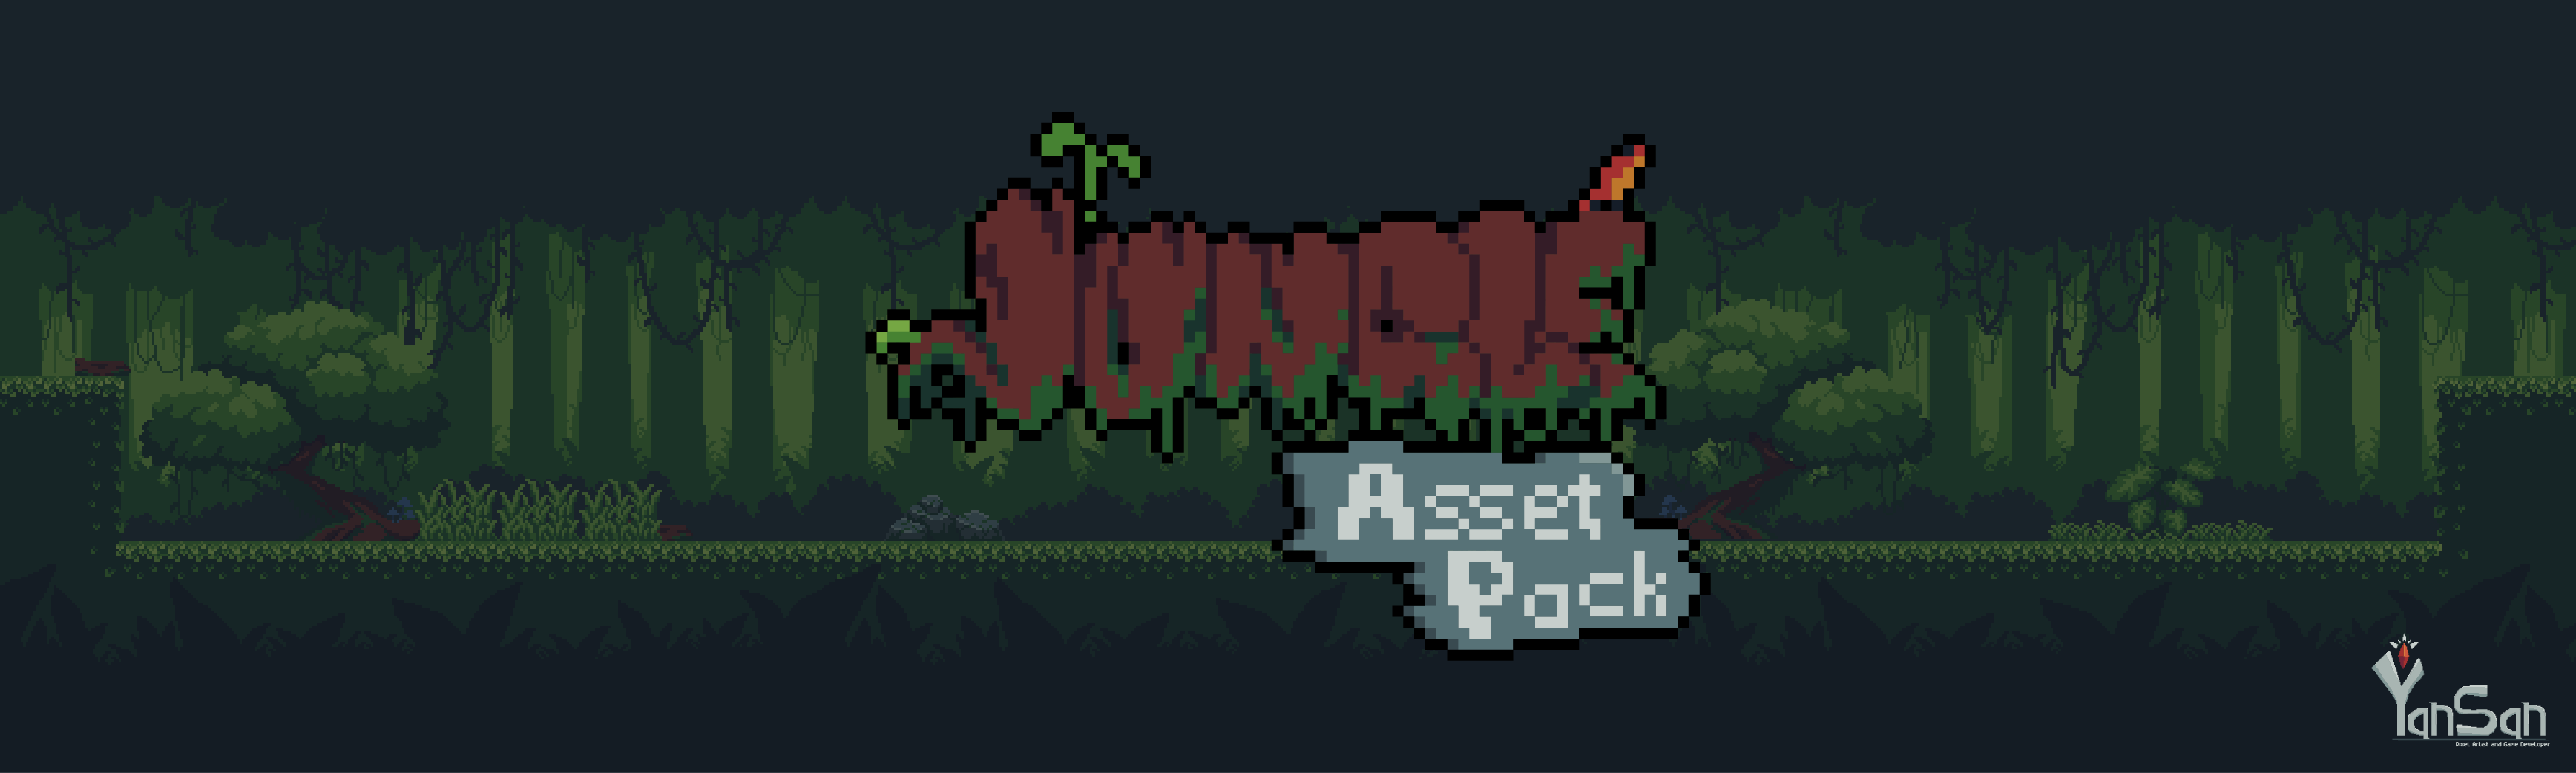 [Platformer Free Asset #1] - Jungle (PixelArt)